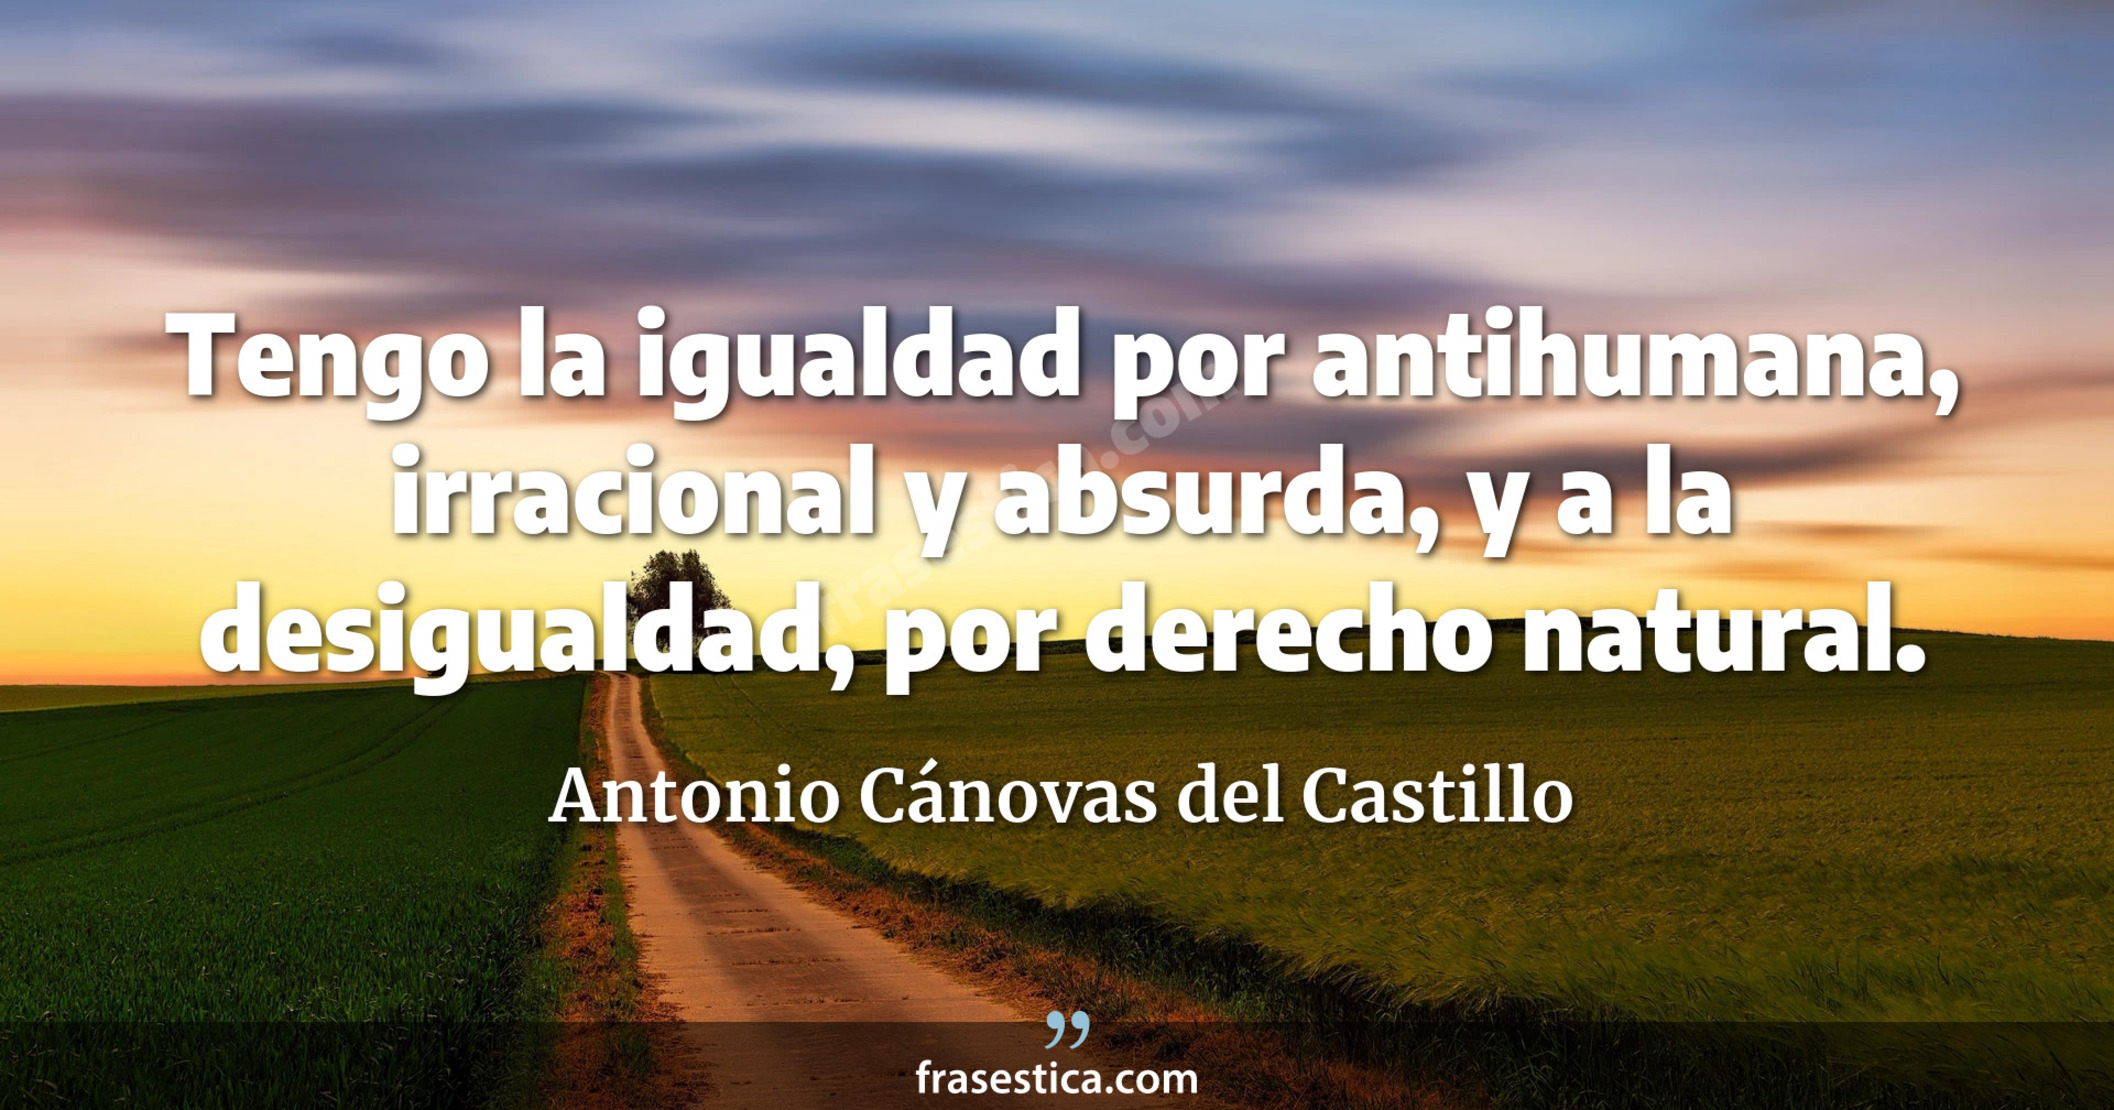 Tengo la igualdad por antihumana, irracional y absurda, y a la desigualdad, por derecho natural. - Antonio Cánovas del Castillo